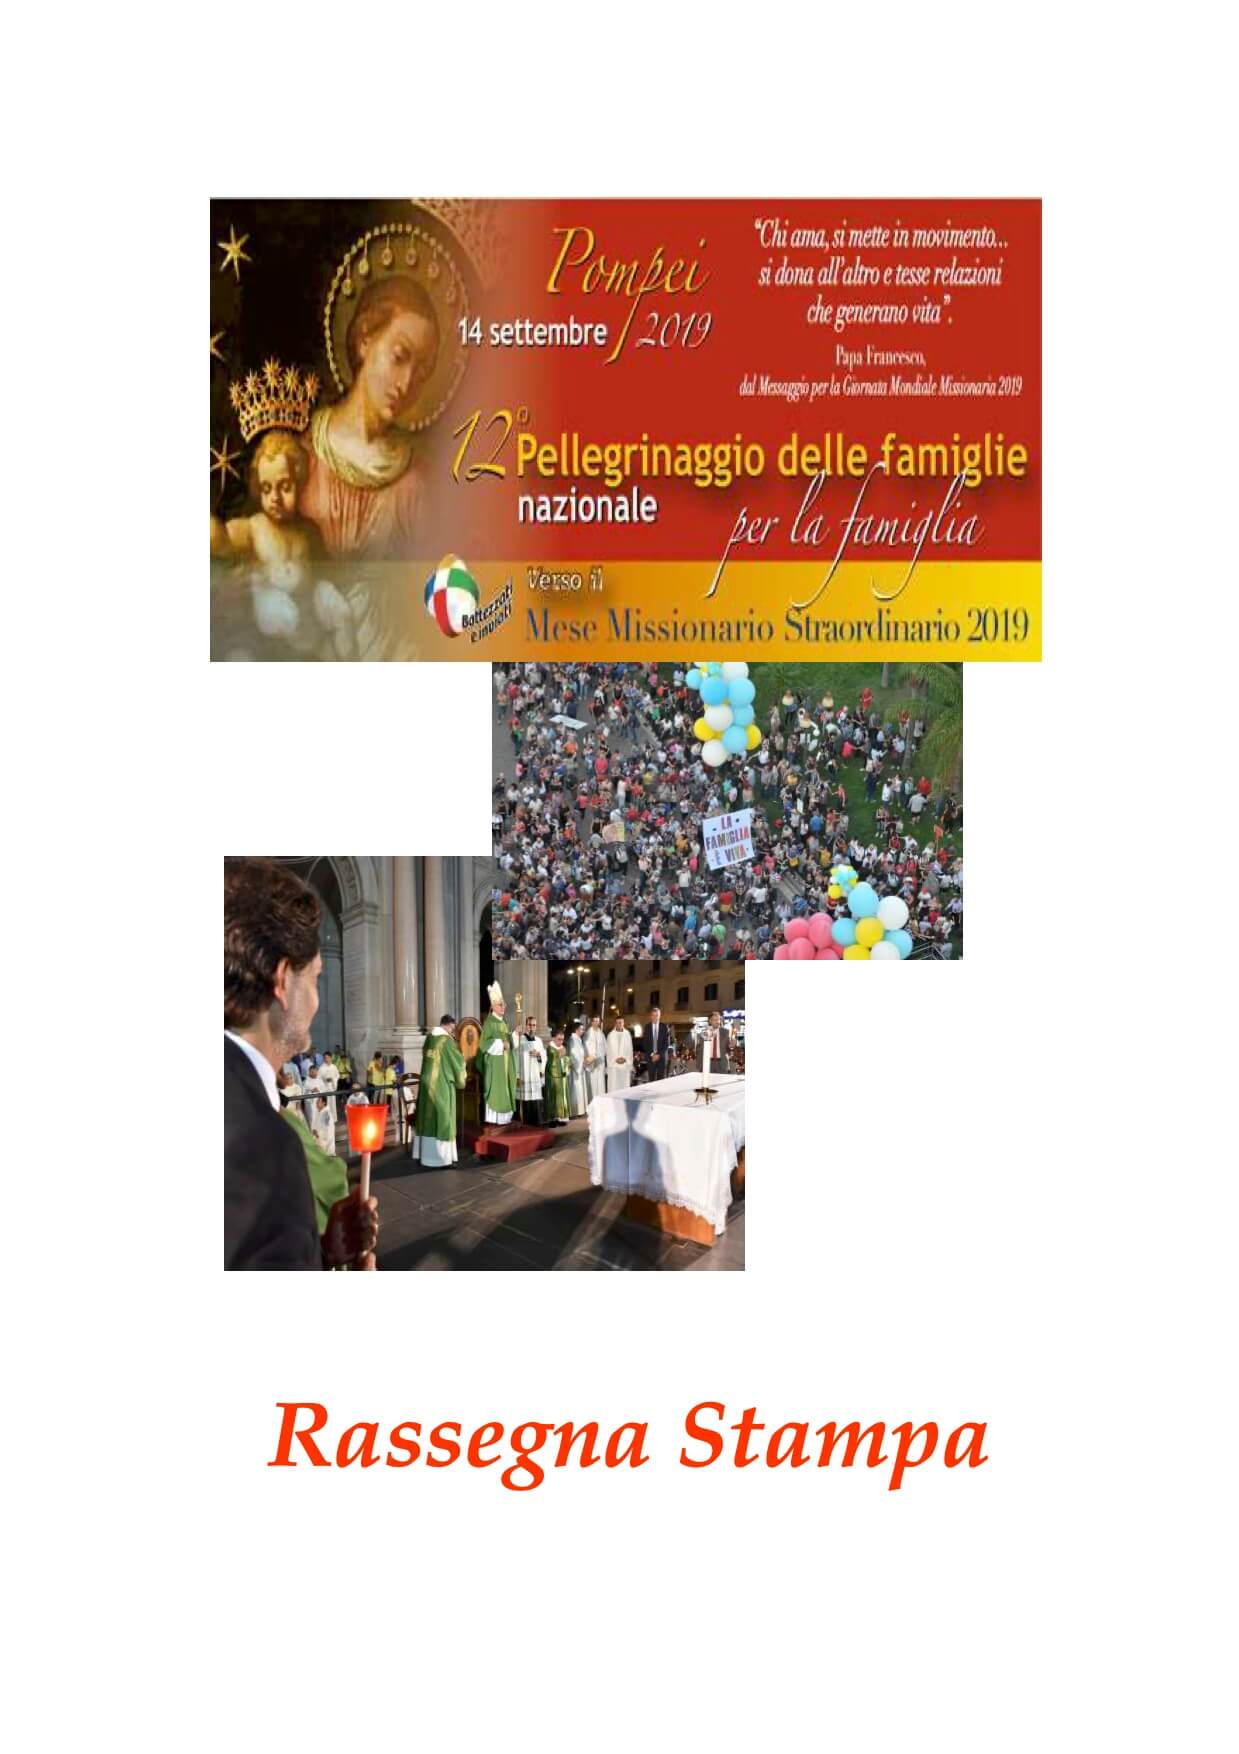 Copertina Rassegna Stampa 12o Pellegrinaggio delle Famiglie a Pompei 2019